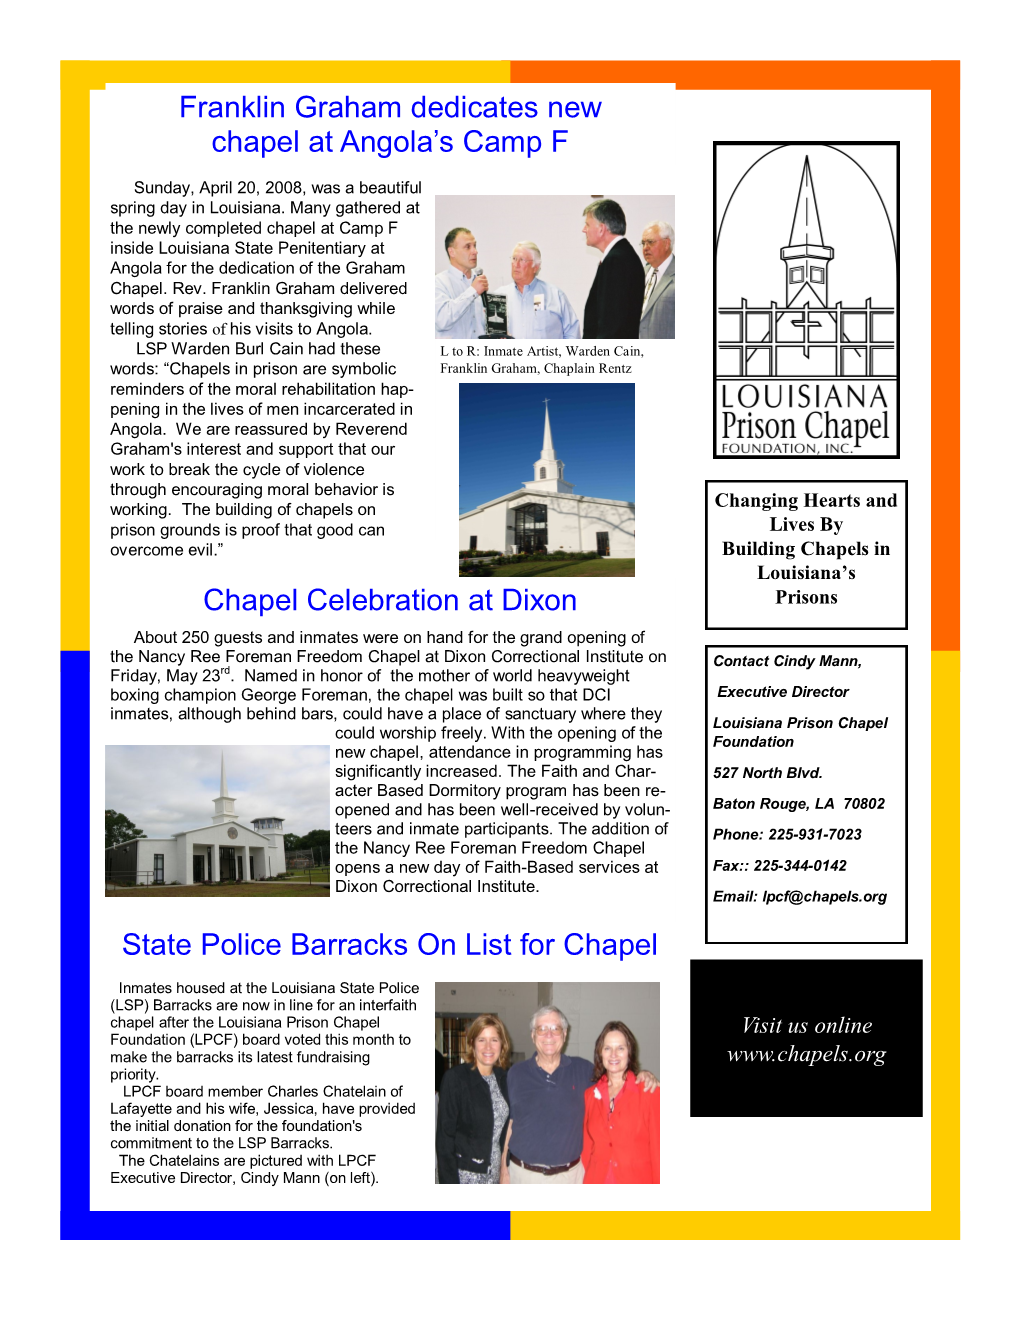 2008 Newsletter